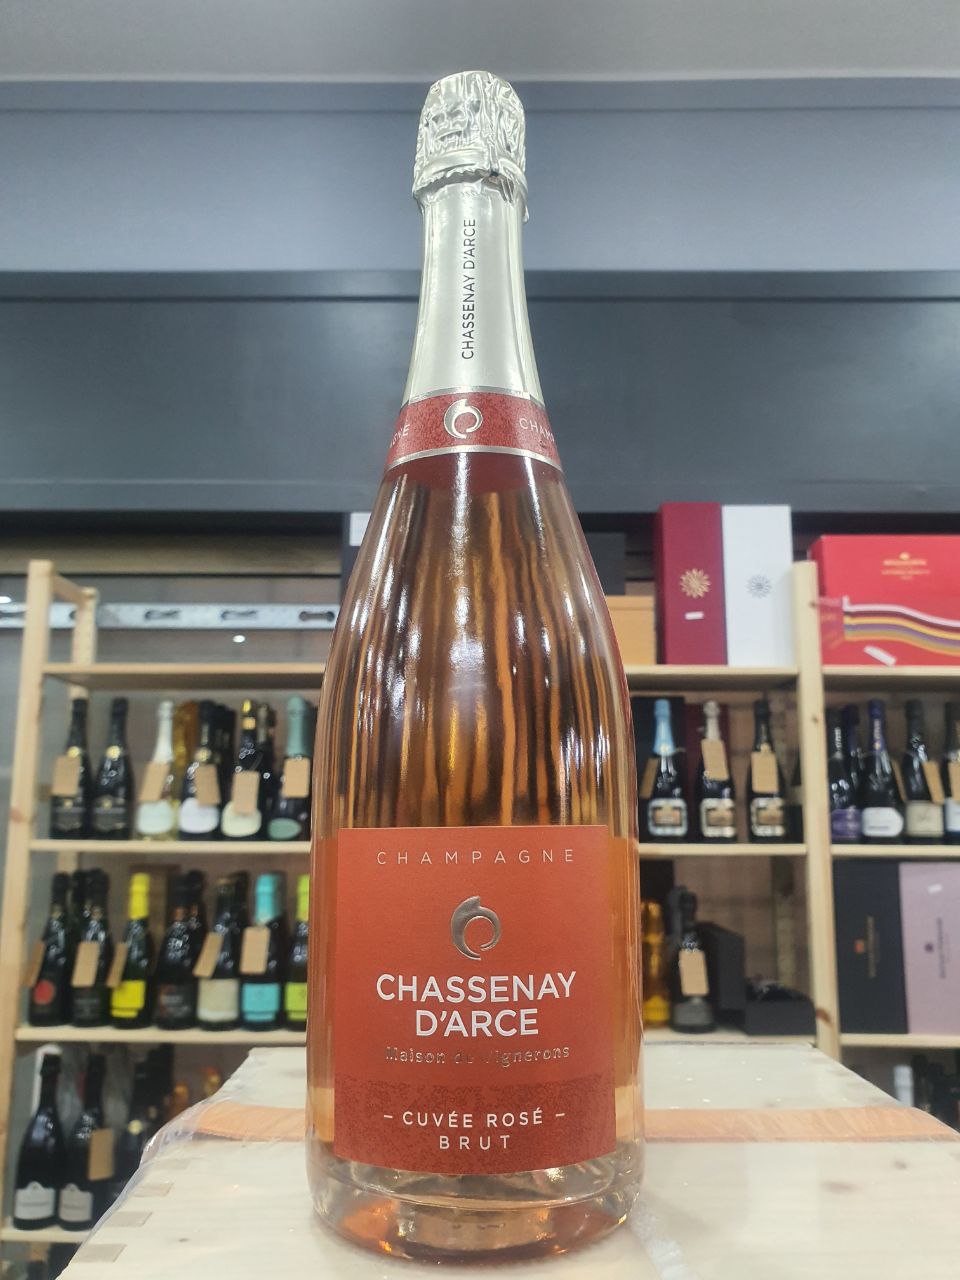 Chassenay D'Arce Champagne Cuvée Rosé Brut